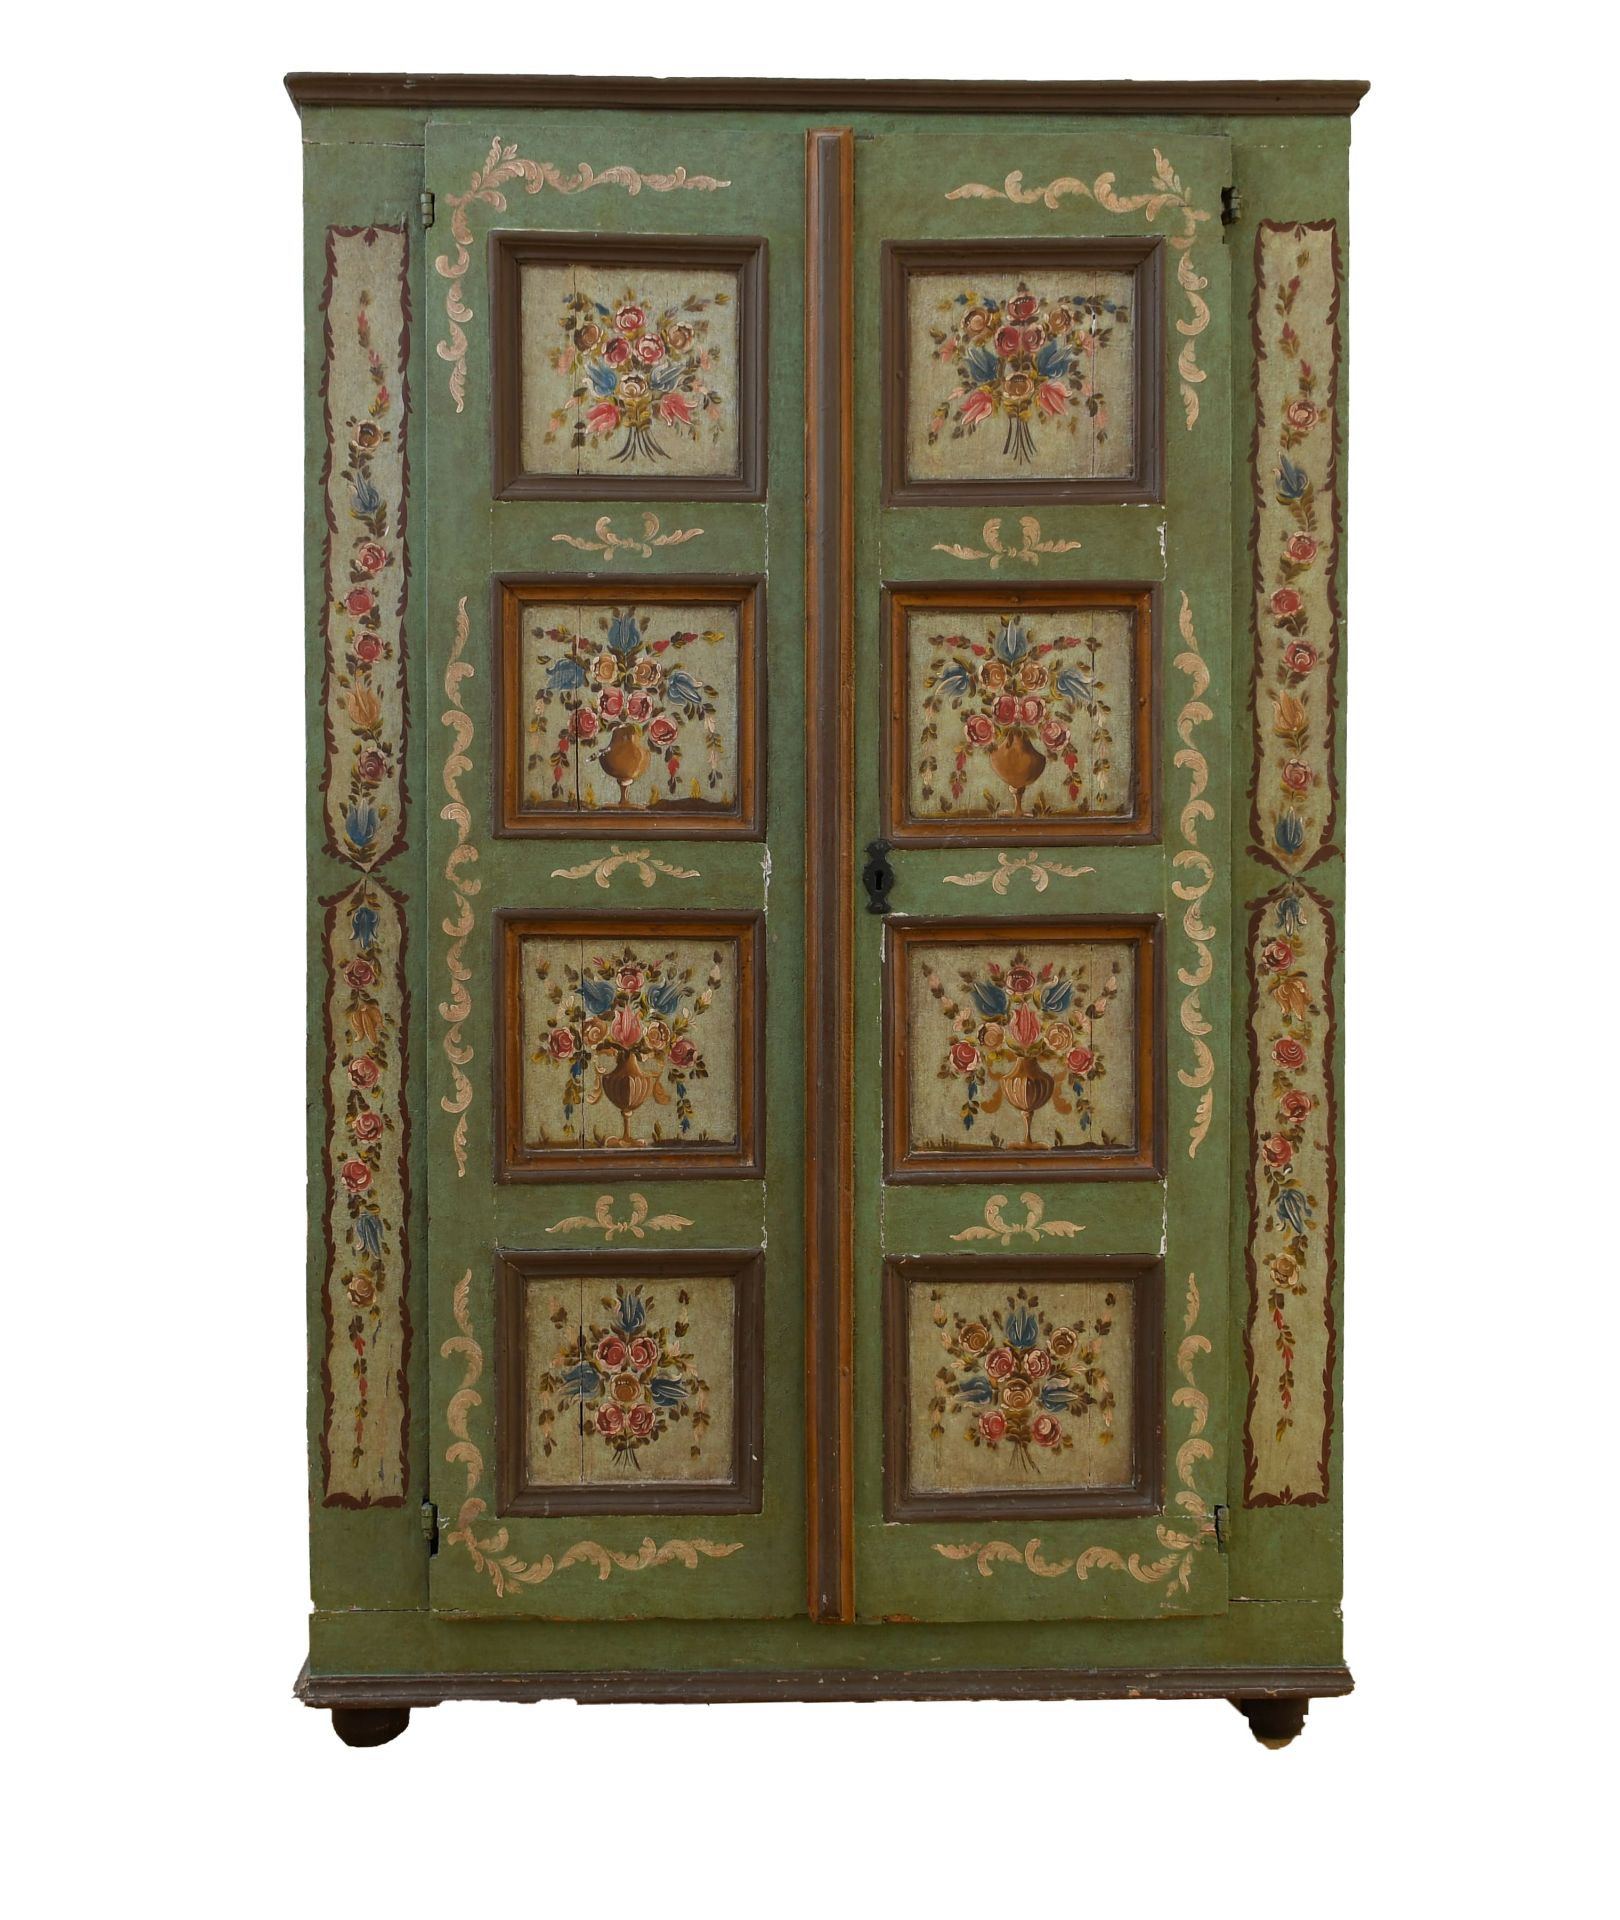 Stipo armadio in legno di abete laccato e dipinto con decori floreali a due sportelli. Alto Adige, - Bild 2 aus 2